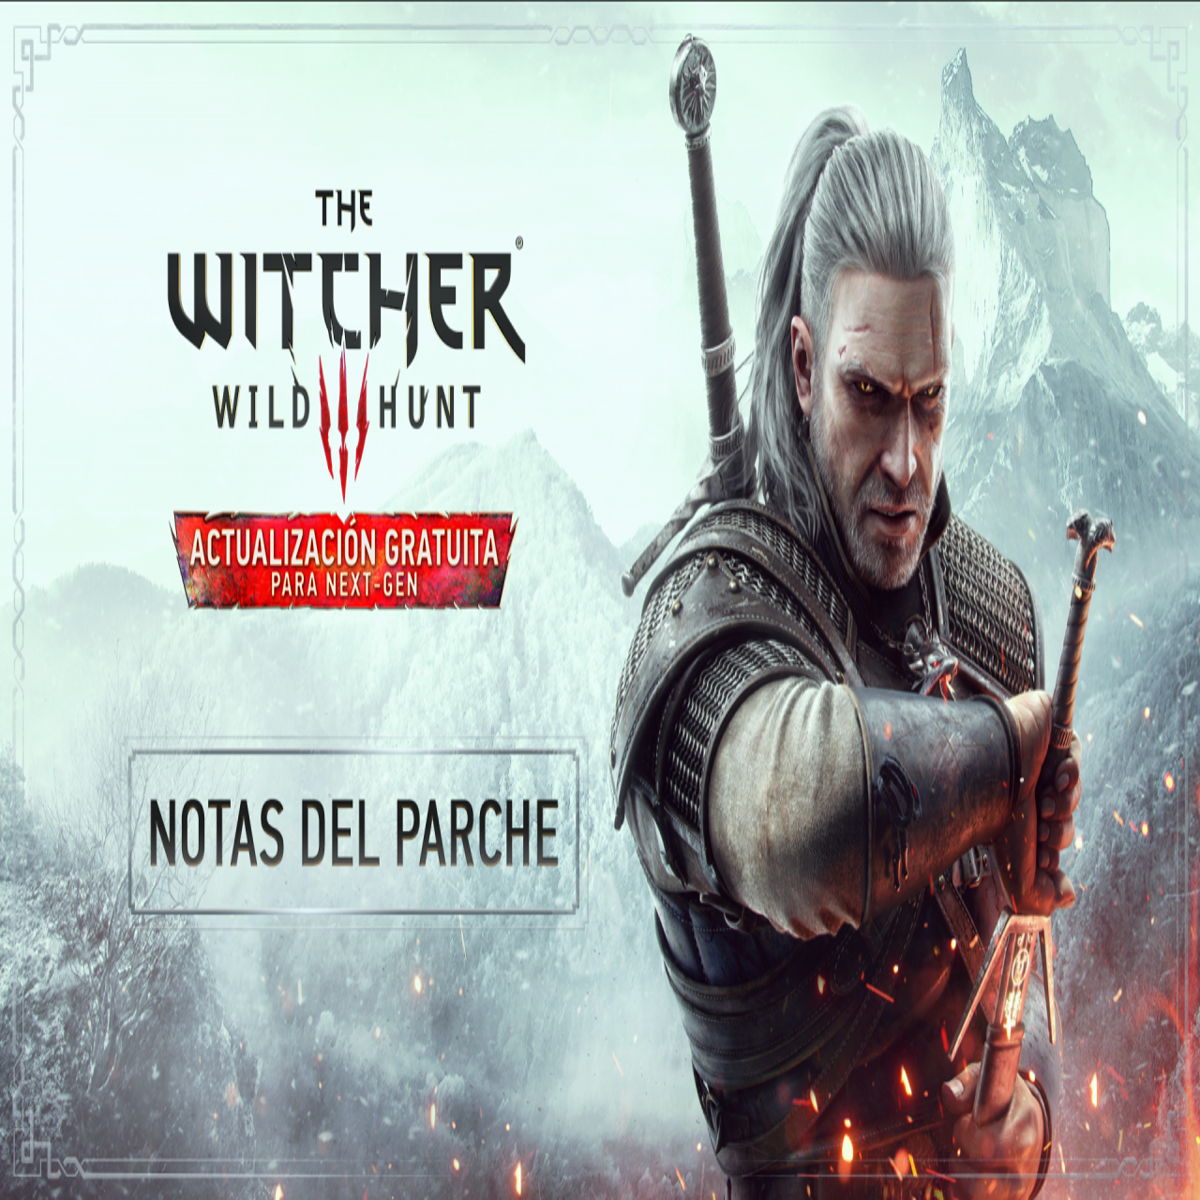 The Witcher 3: cómo transferir partidas guardadas de PS4 a PS5 y de Xbox  One a Xbox Series X, S